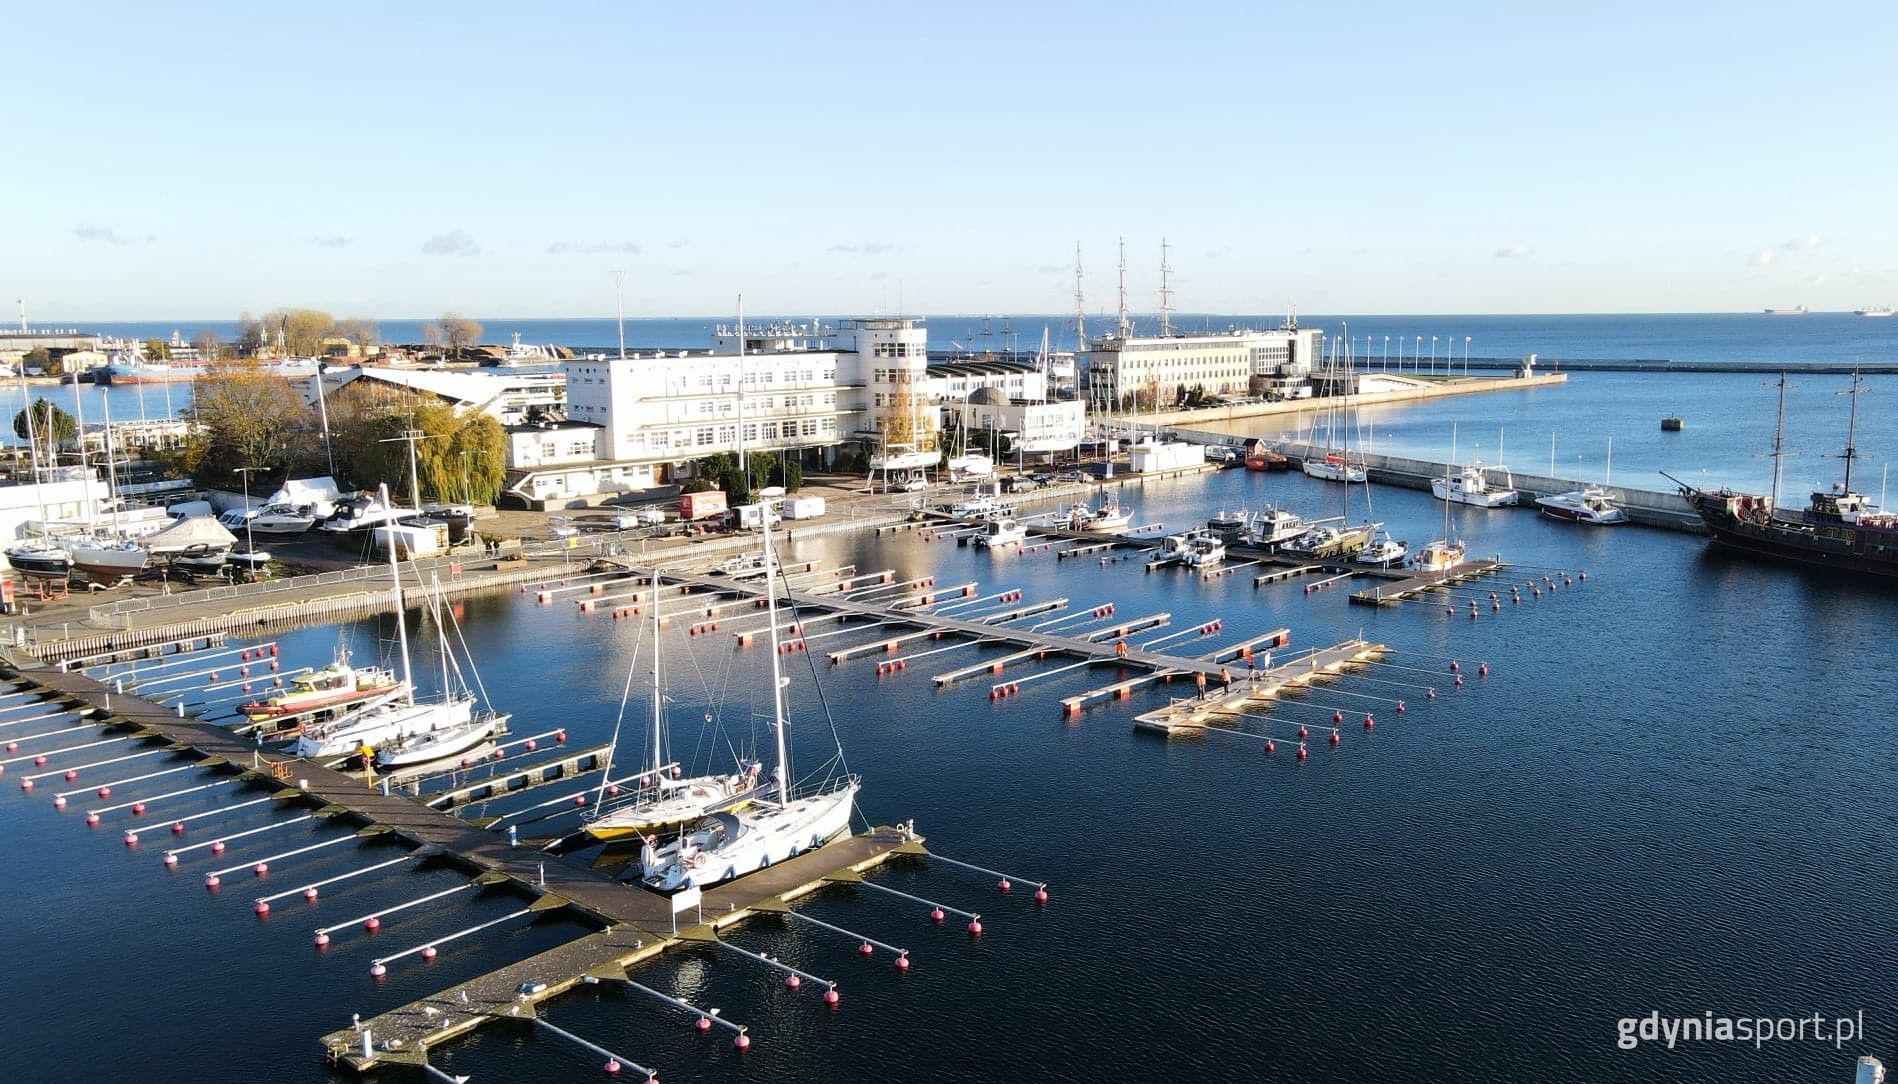 Przystań Jachtowa Marina Gdynia prezentuje się jeszcze bardziej okazale